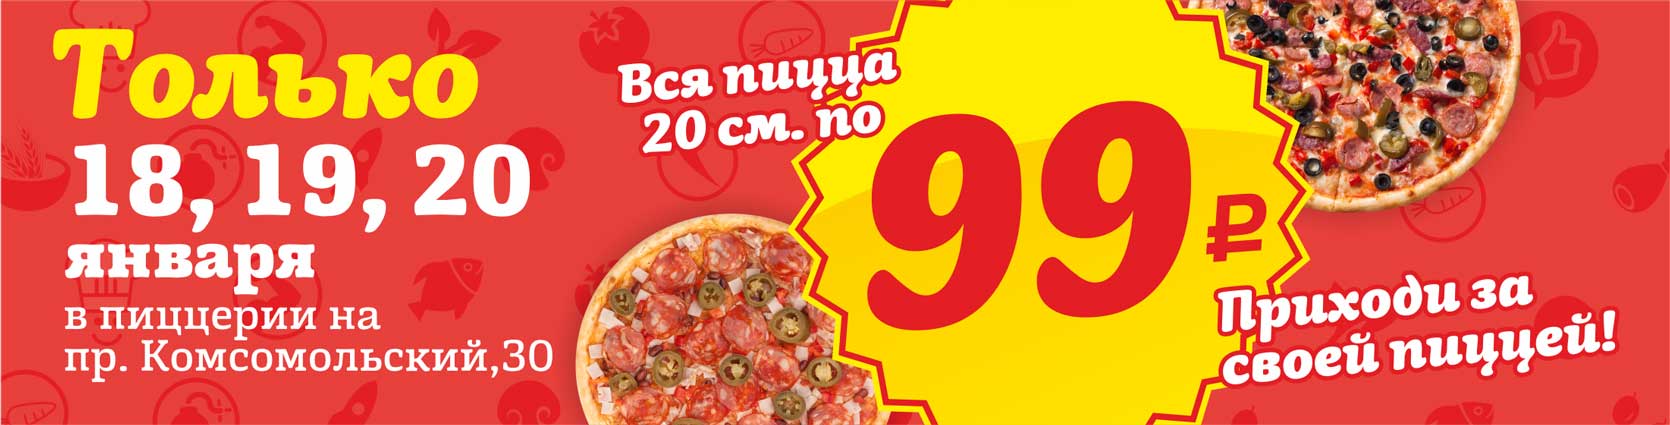 Вся пицца 20 см по 99 рублей!